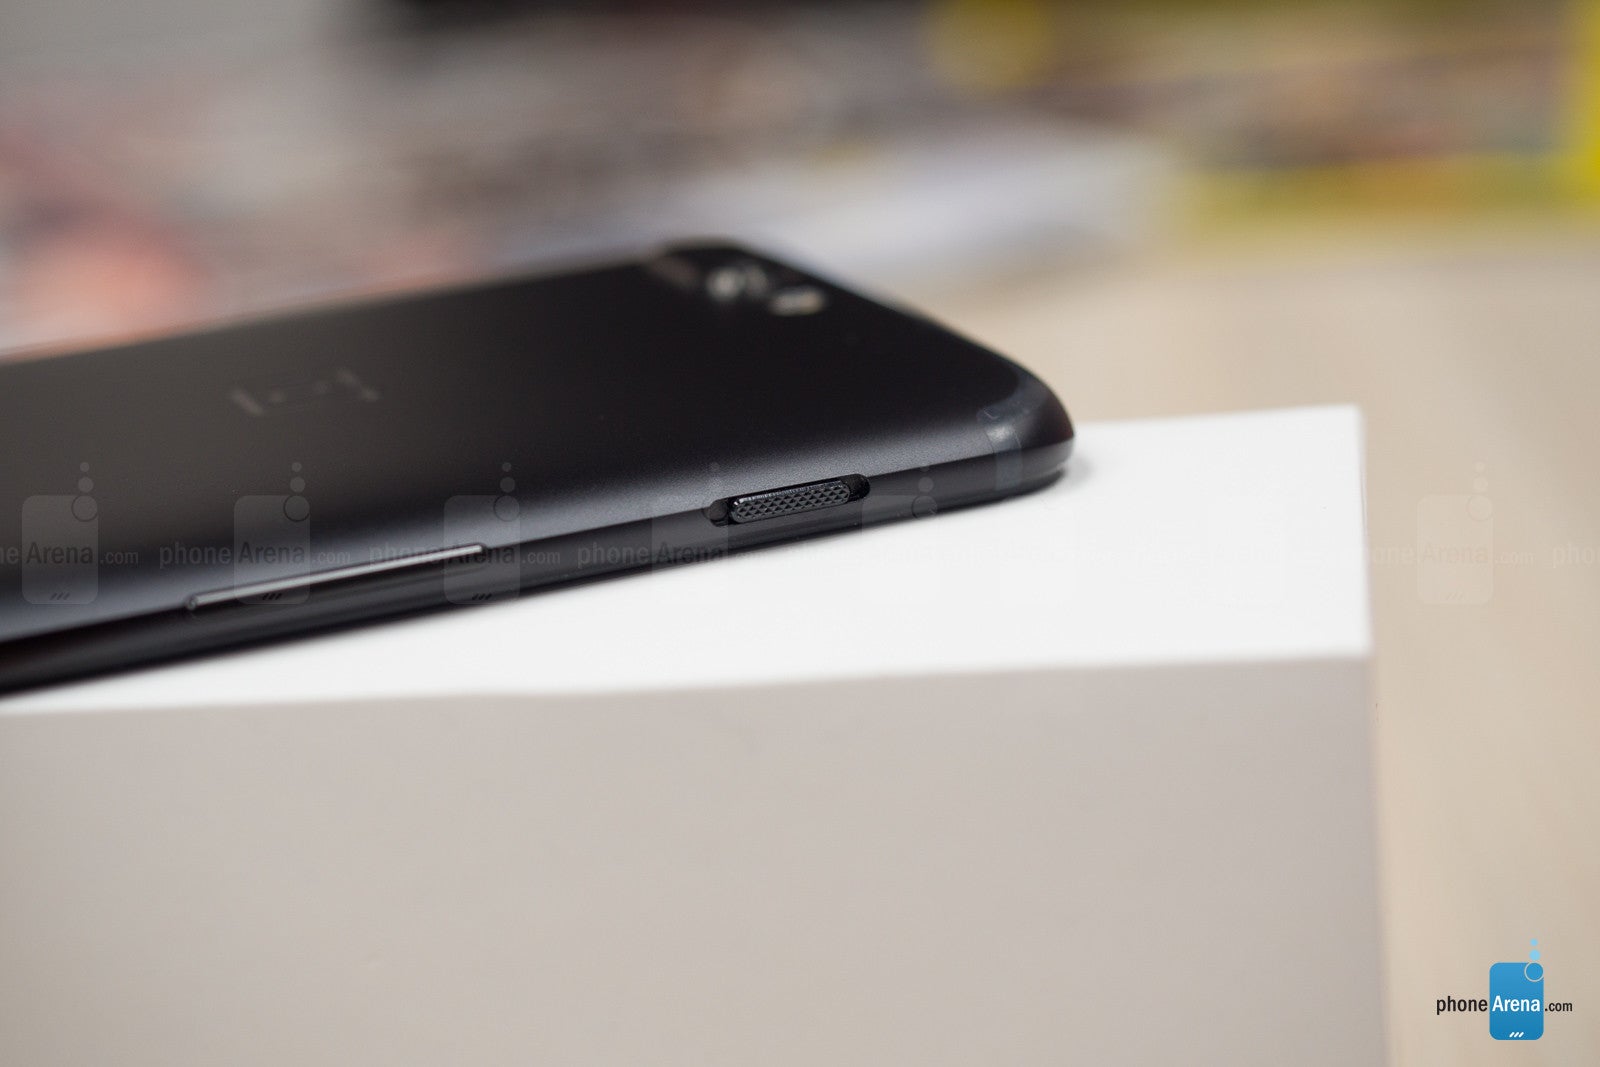 OnePlus 5's slider switch - OnePlus 5 vs LG G6